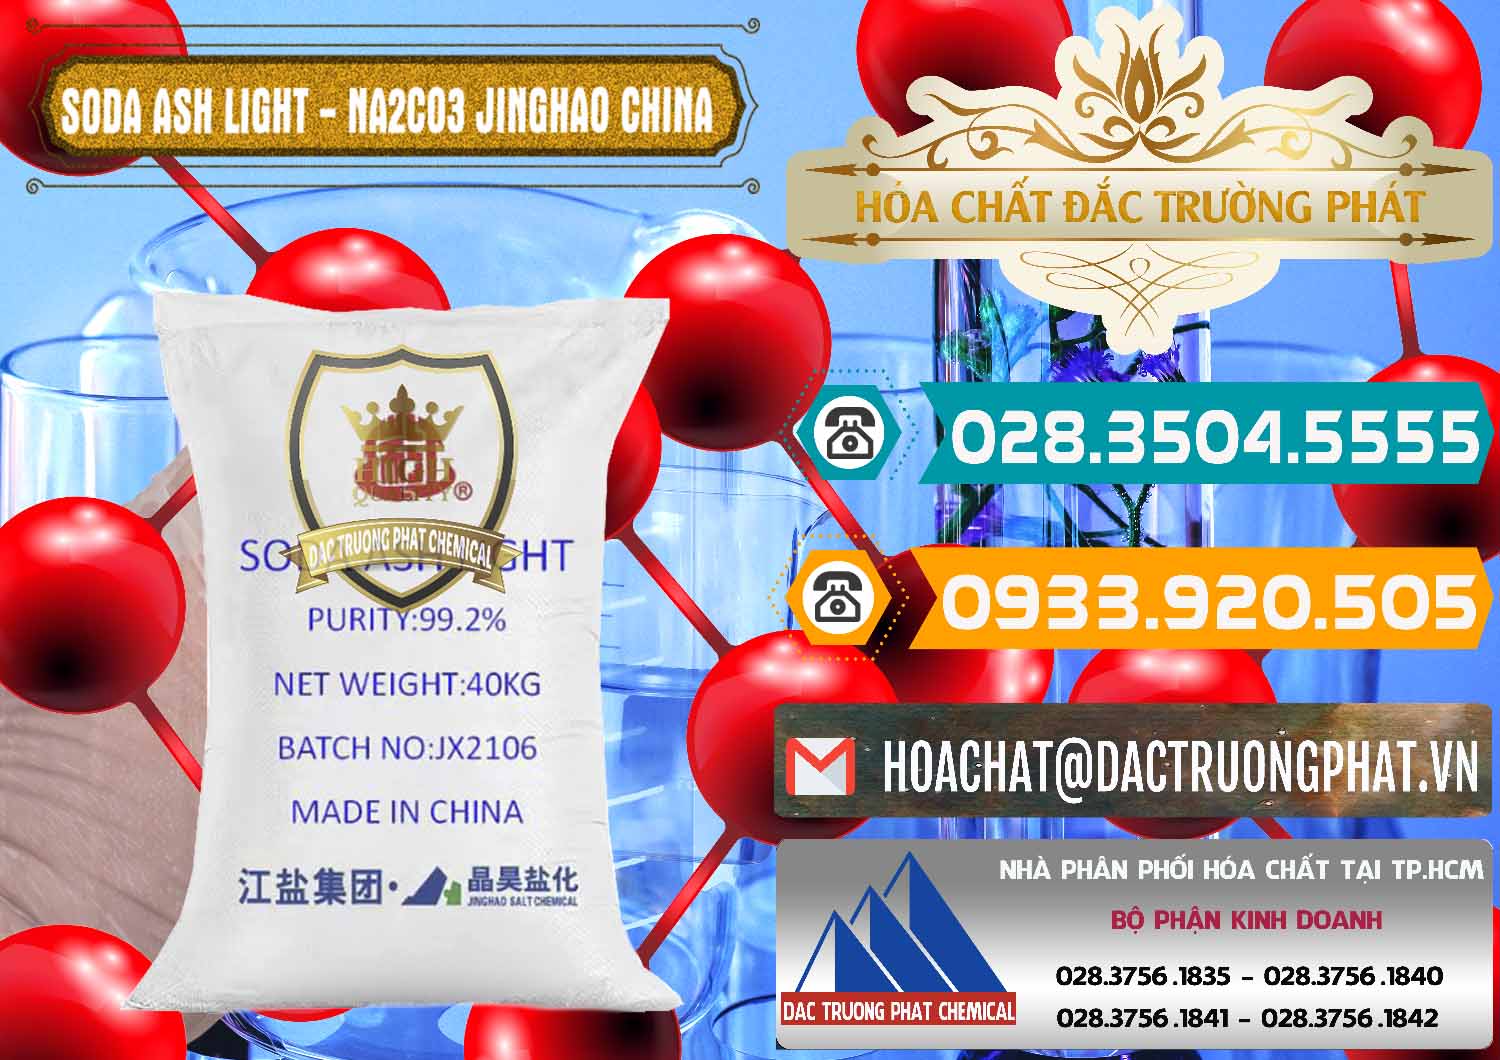 Chuyên kinh doanh và bán Soda Ash Light - NA2CO3 Jinghao Trung Quốc China - 0339 - Phân phối - cung cấp hóa chất tại TP.HCM - congtyhoachat.vn